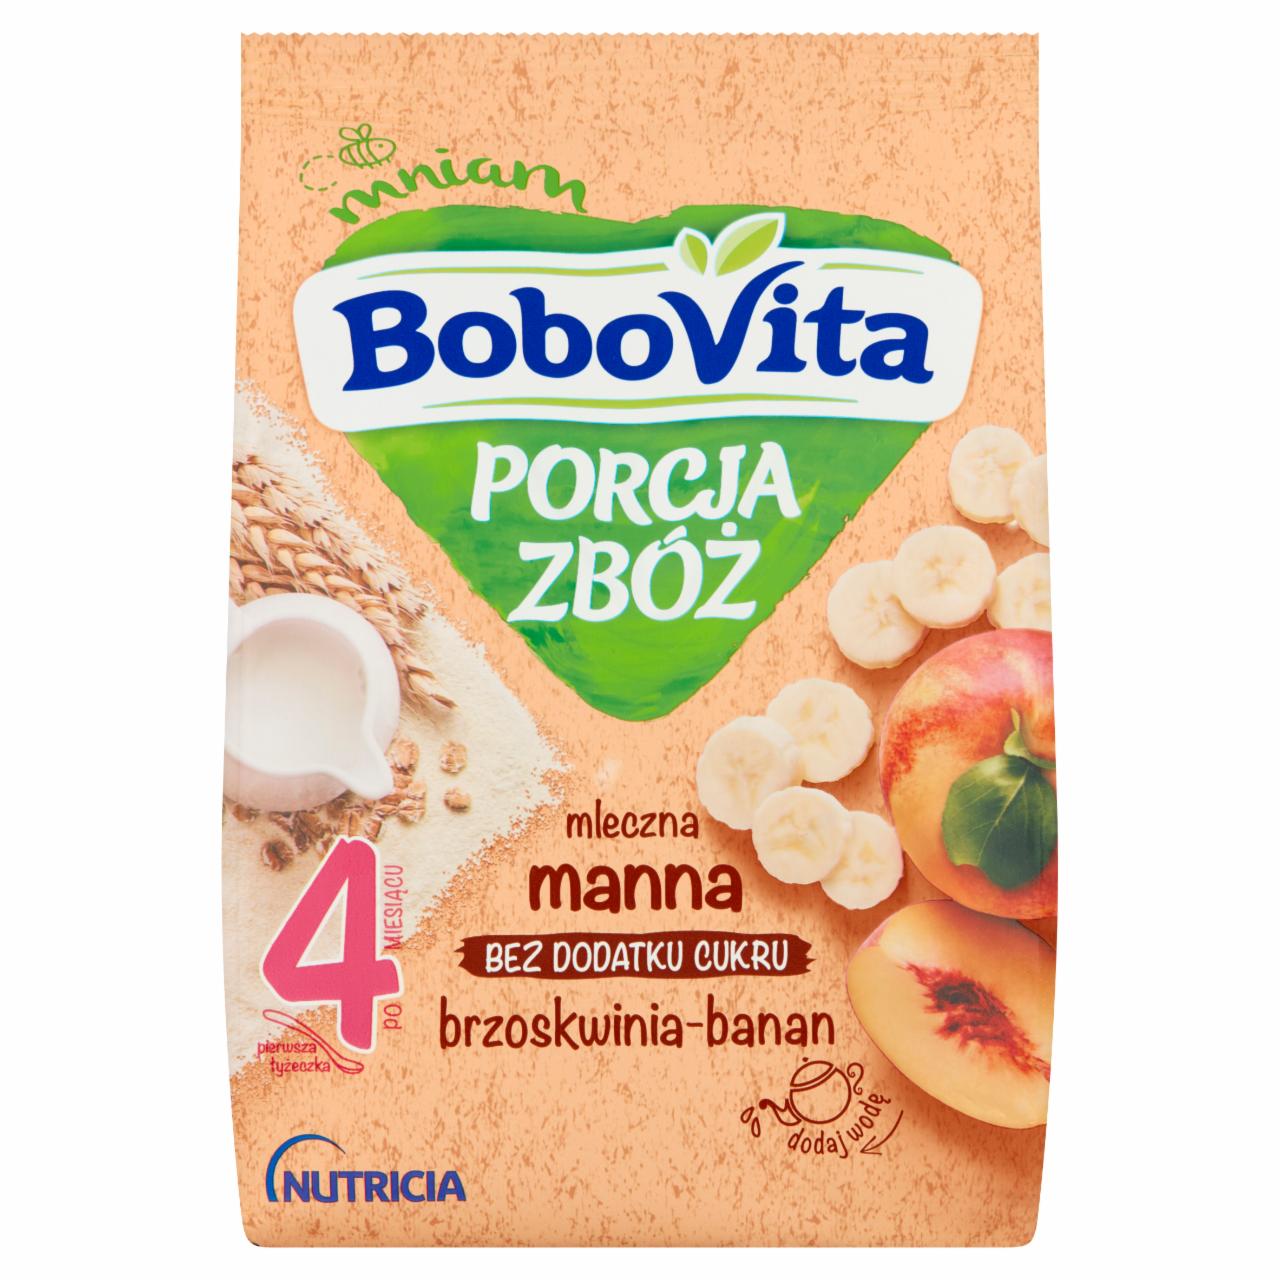 Zdjęcia - BoboVita Porcja zbóż Kaszka mleczna manna brzoskwinia-banan po 4 miesiącu 210 g